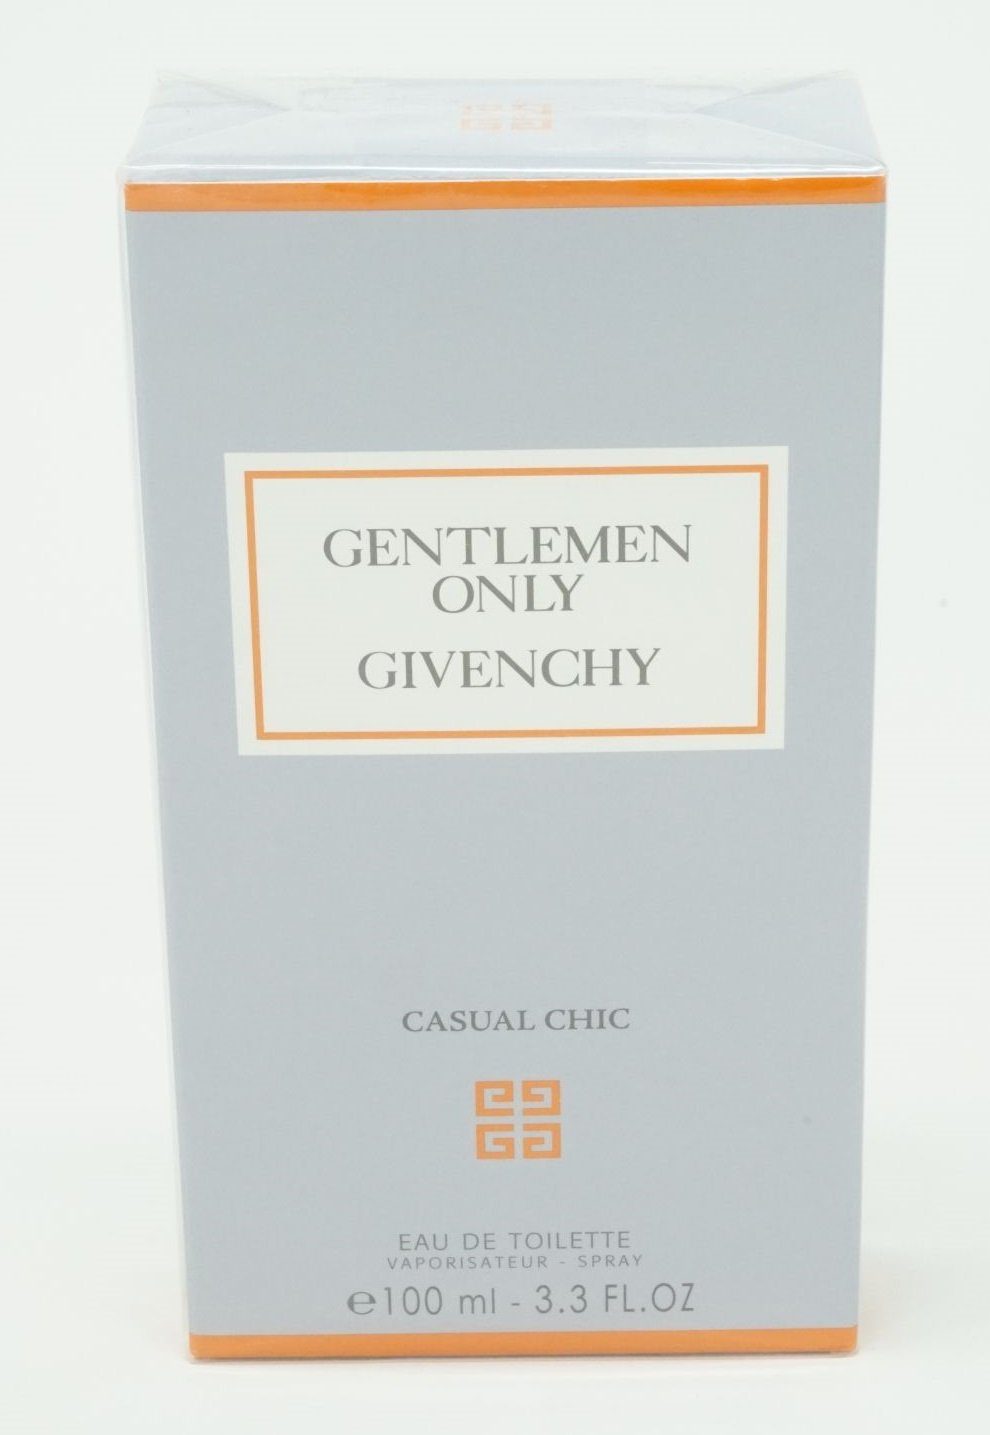 Givenchy ml Eau Toilette de Chic GIVENCHY de Only Gentleman Eau Toilette 100 Casual